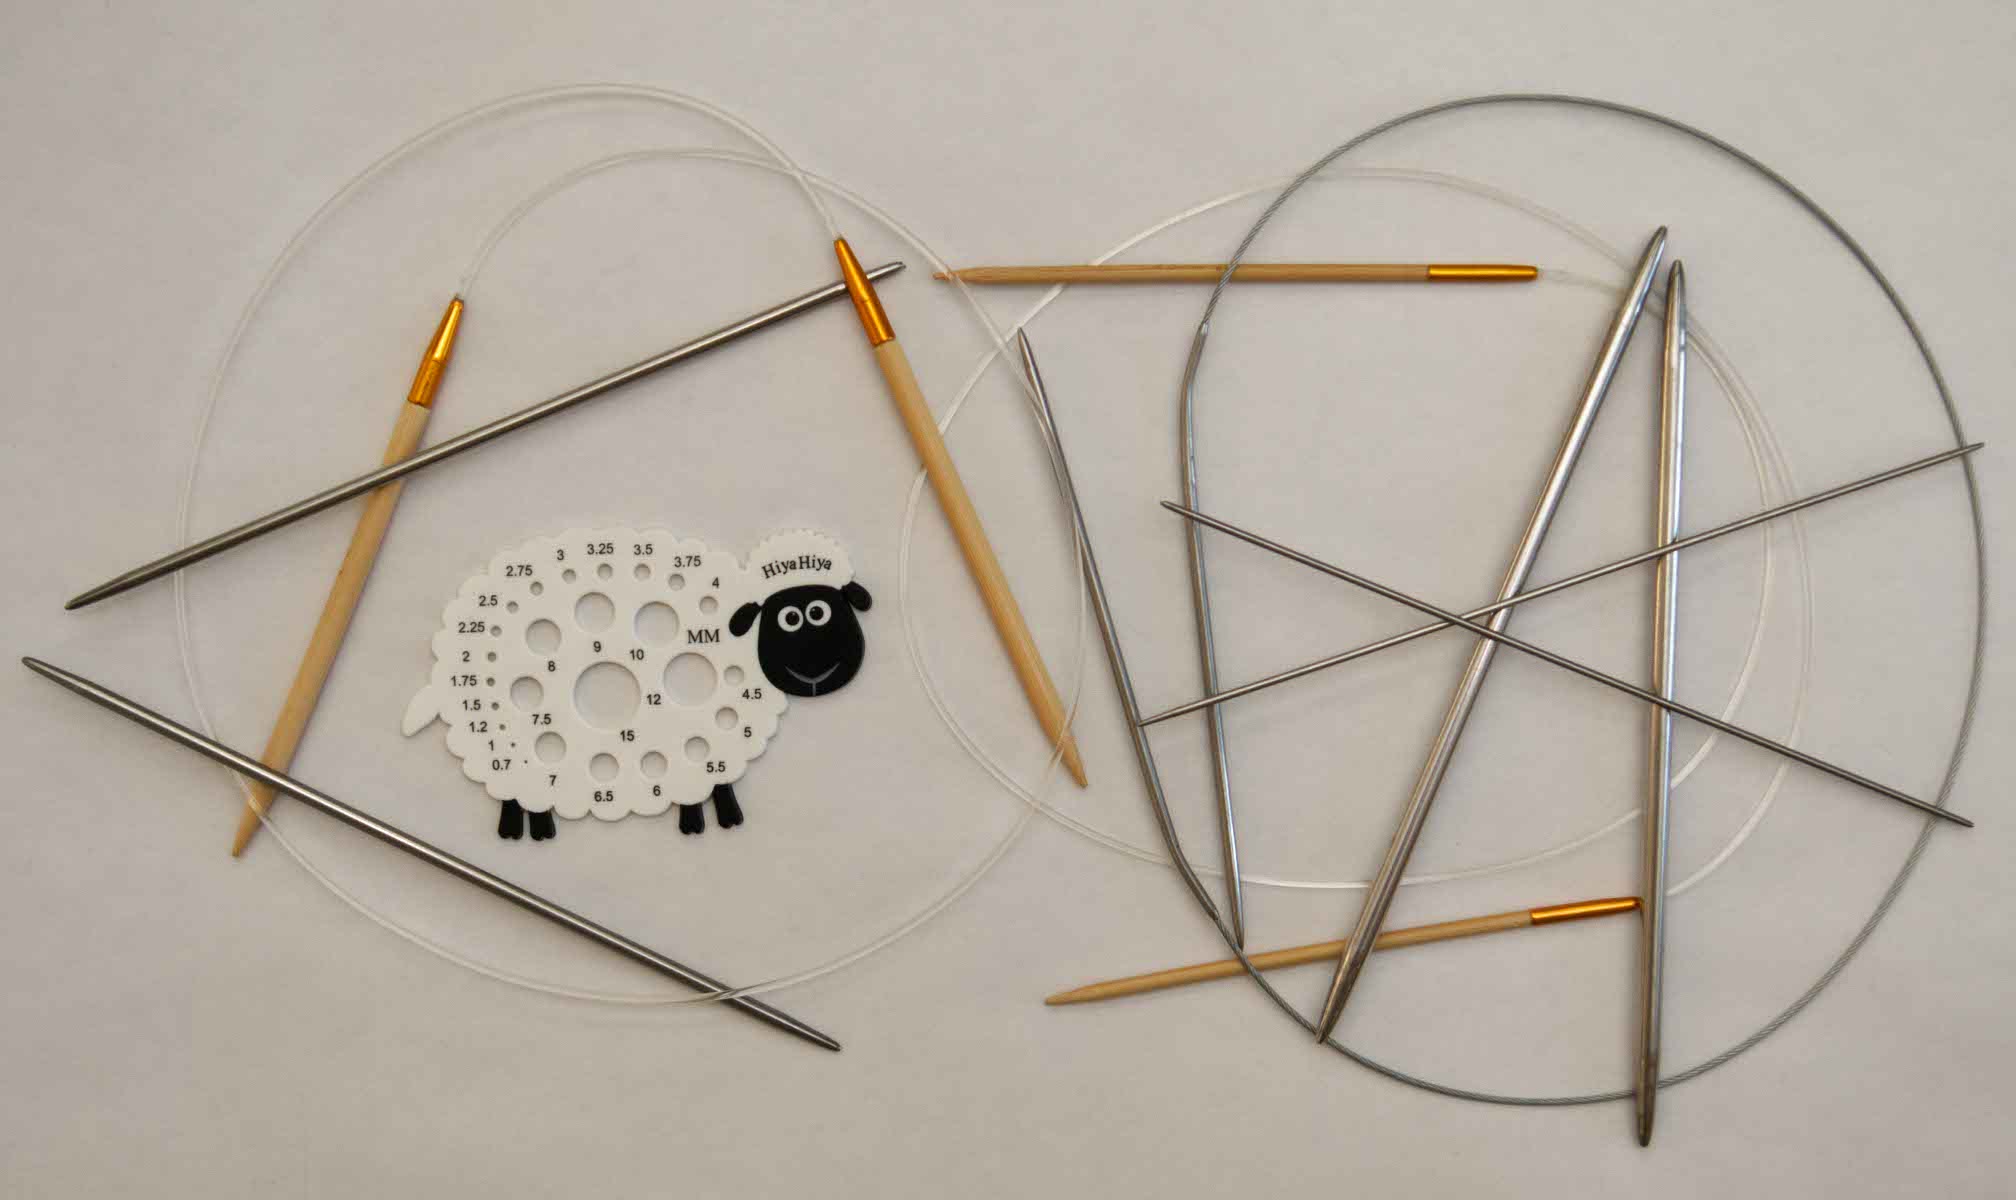 Image: Knitting needles and sizer